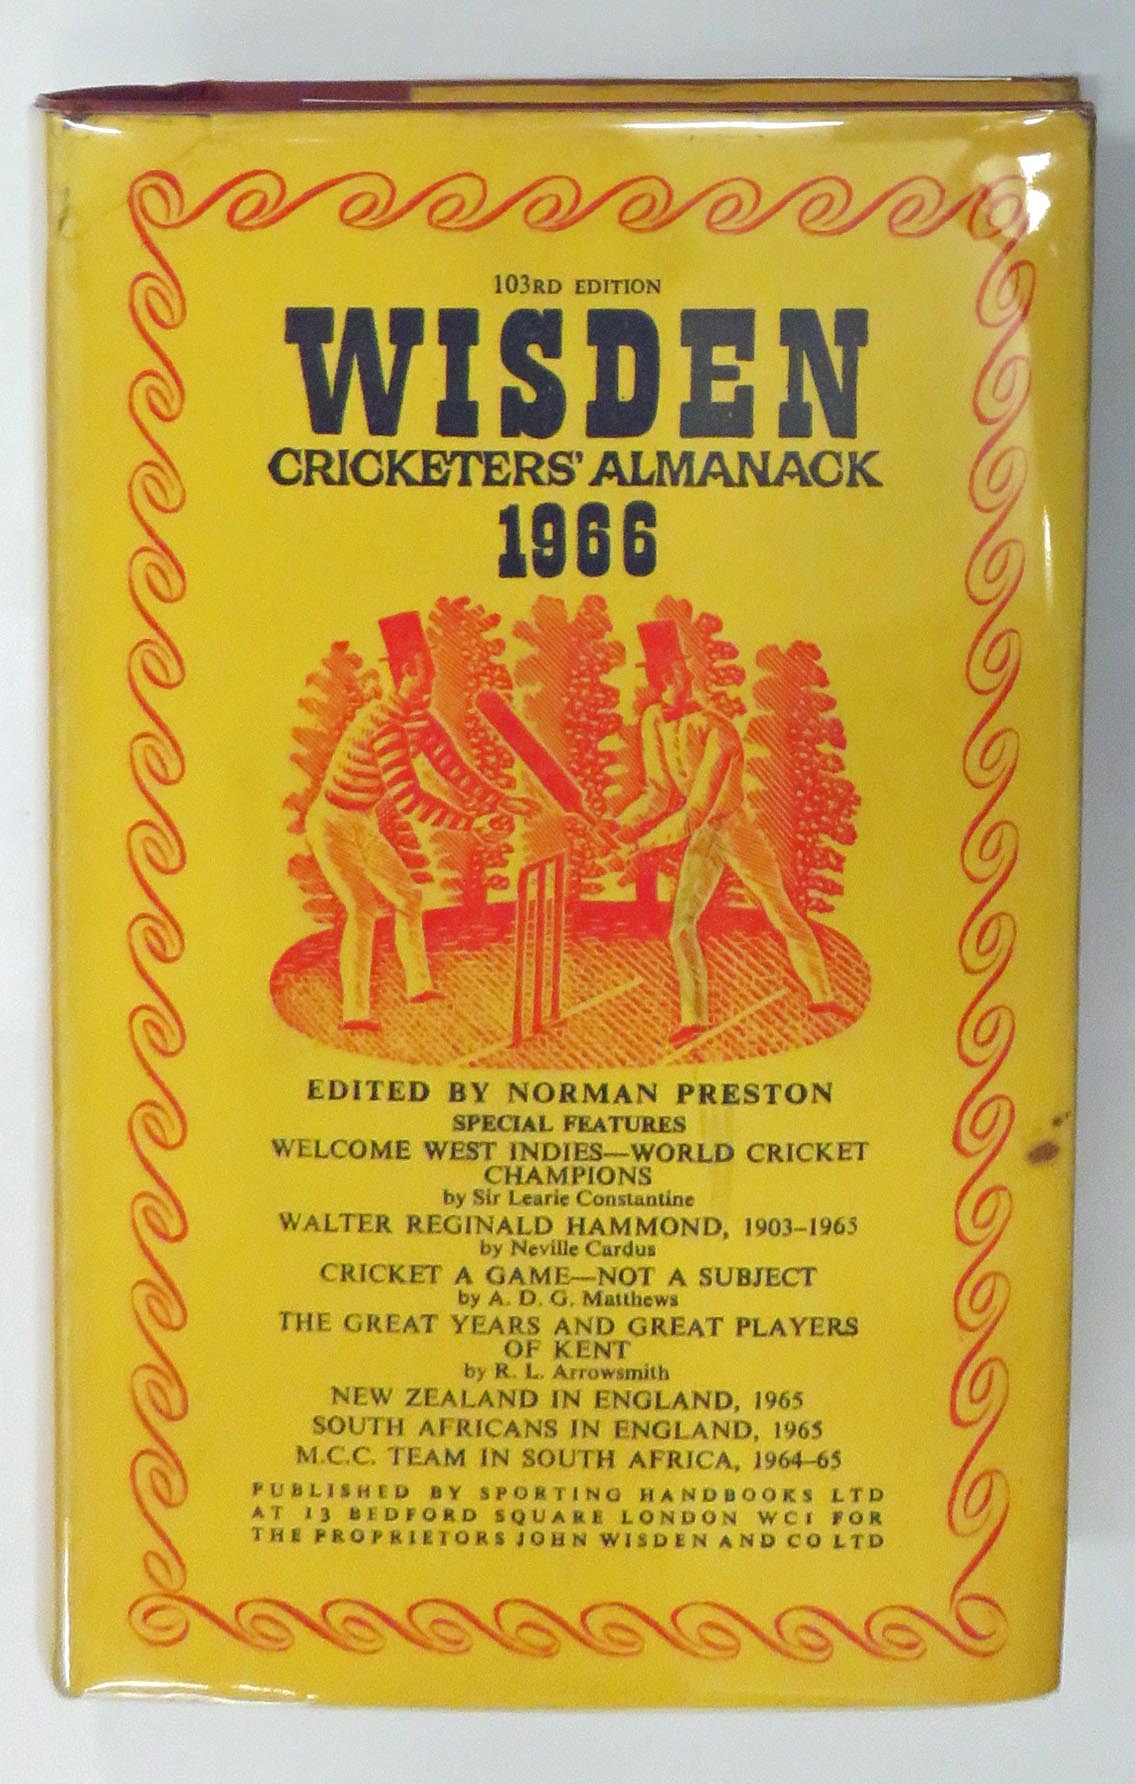 Wisden Cricketers' Almanack 1966